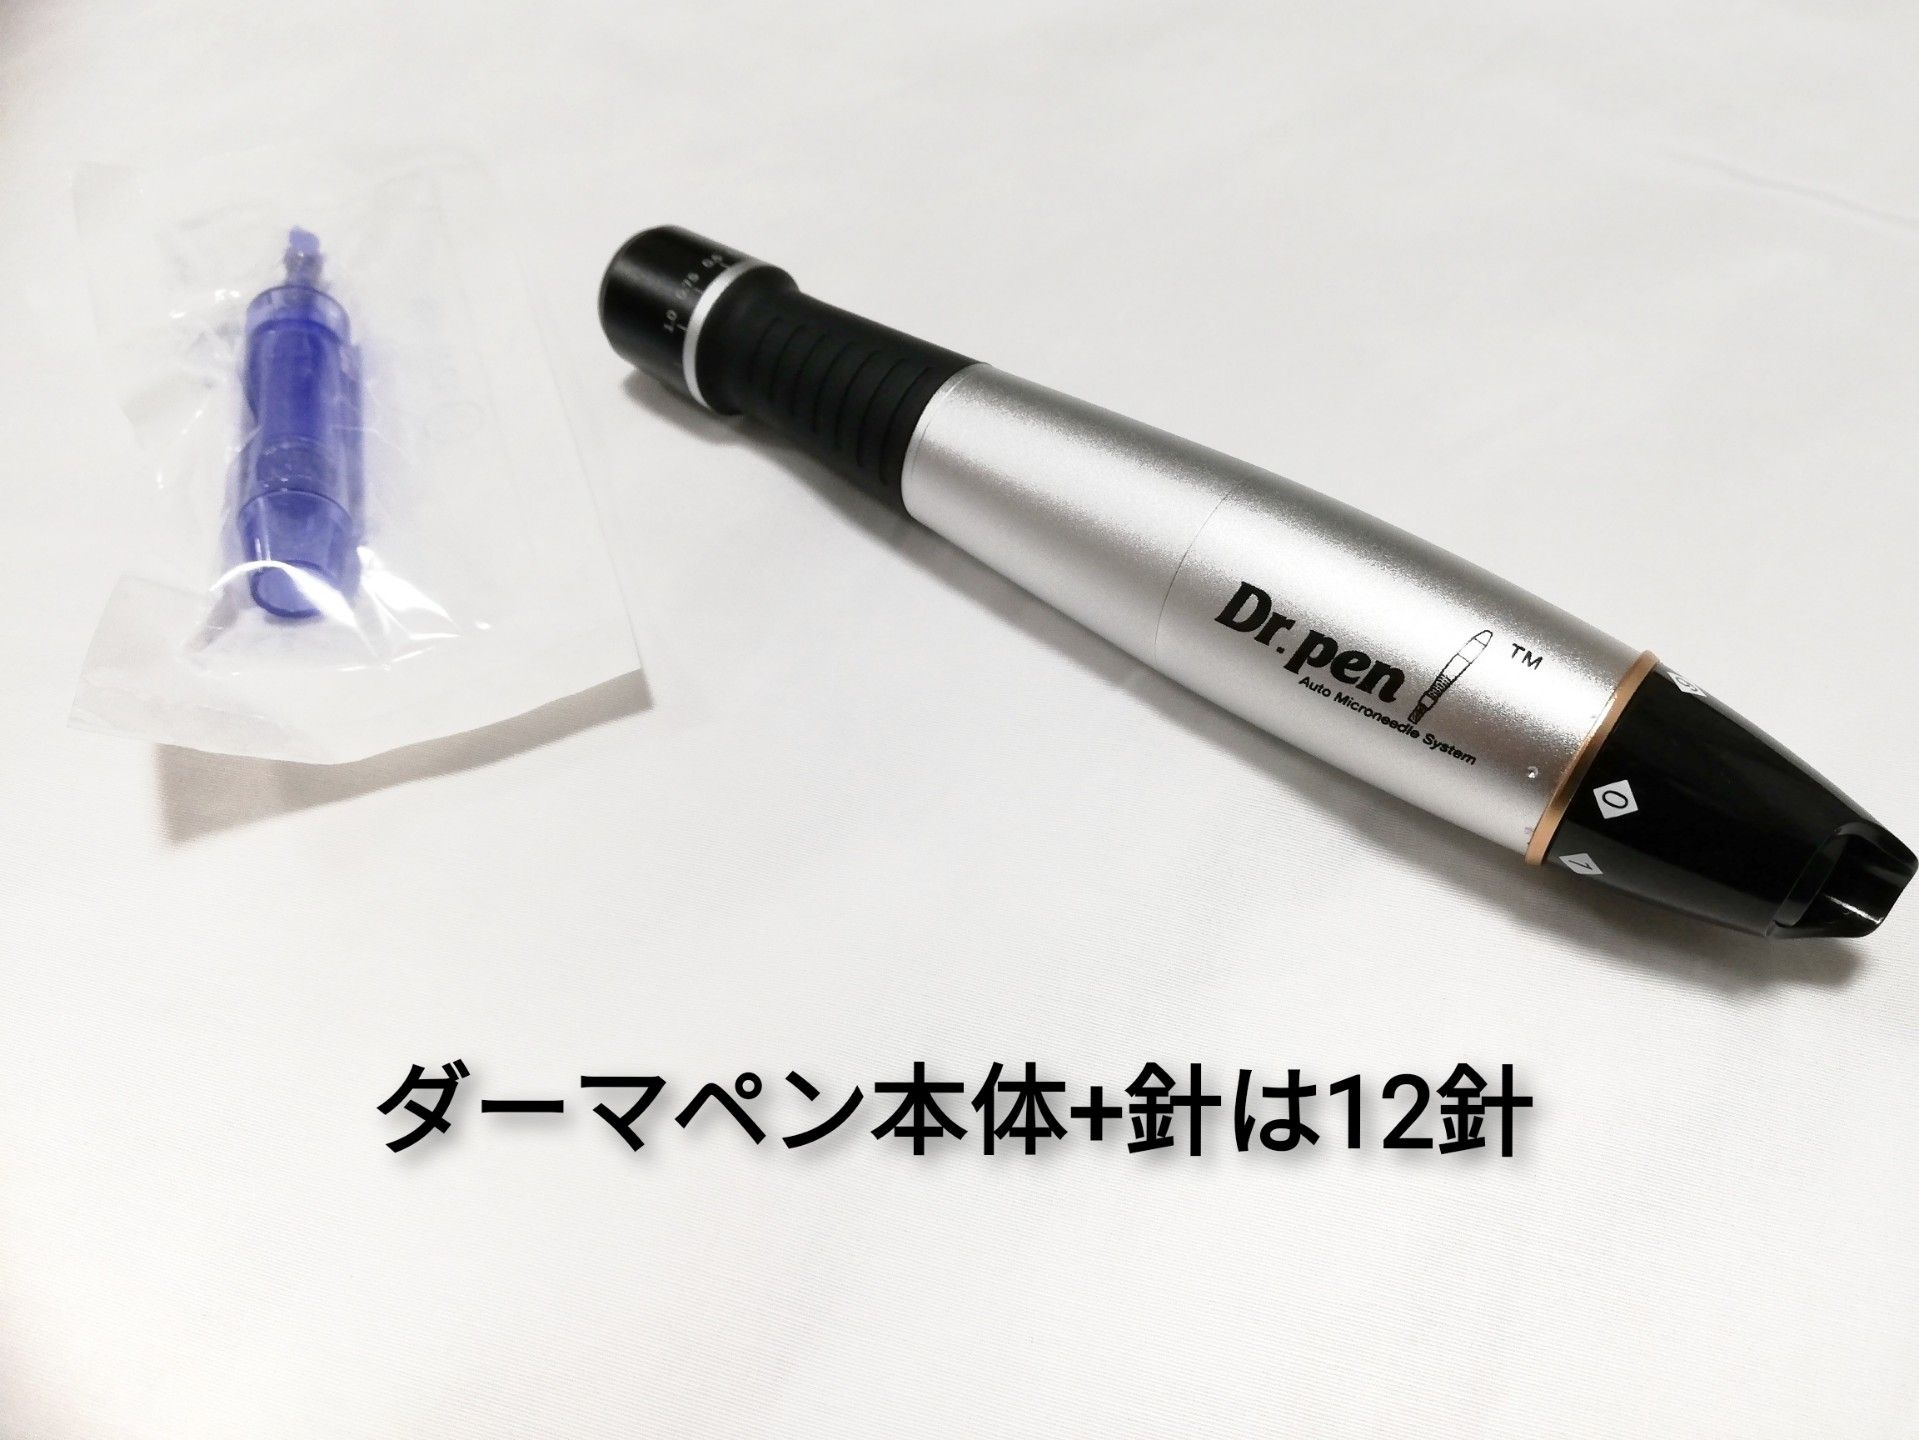 Dr.Pen ULTIMA-M8 ダーマペン セルフダーマペン - 美容機器